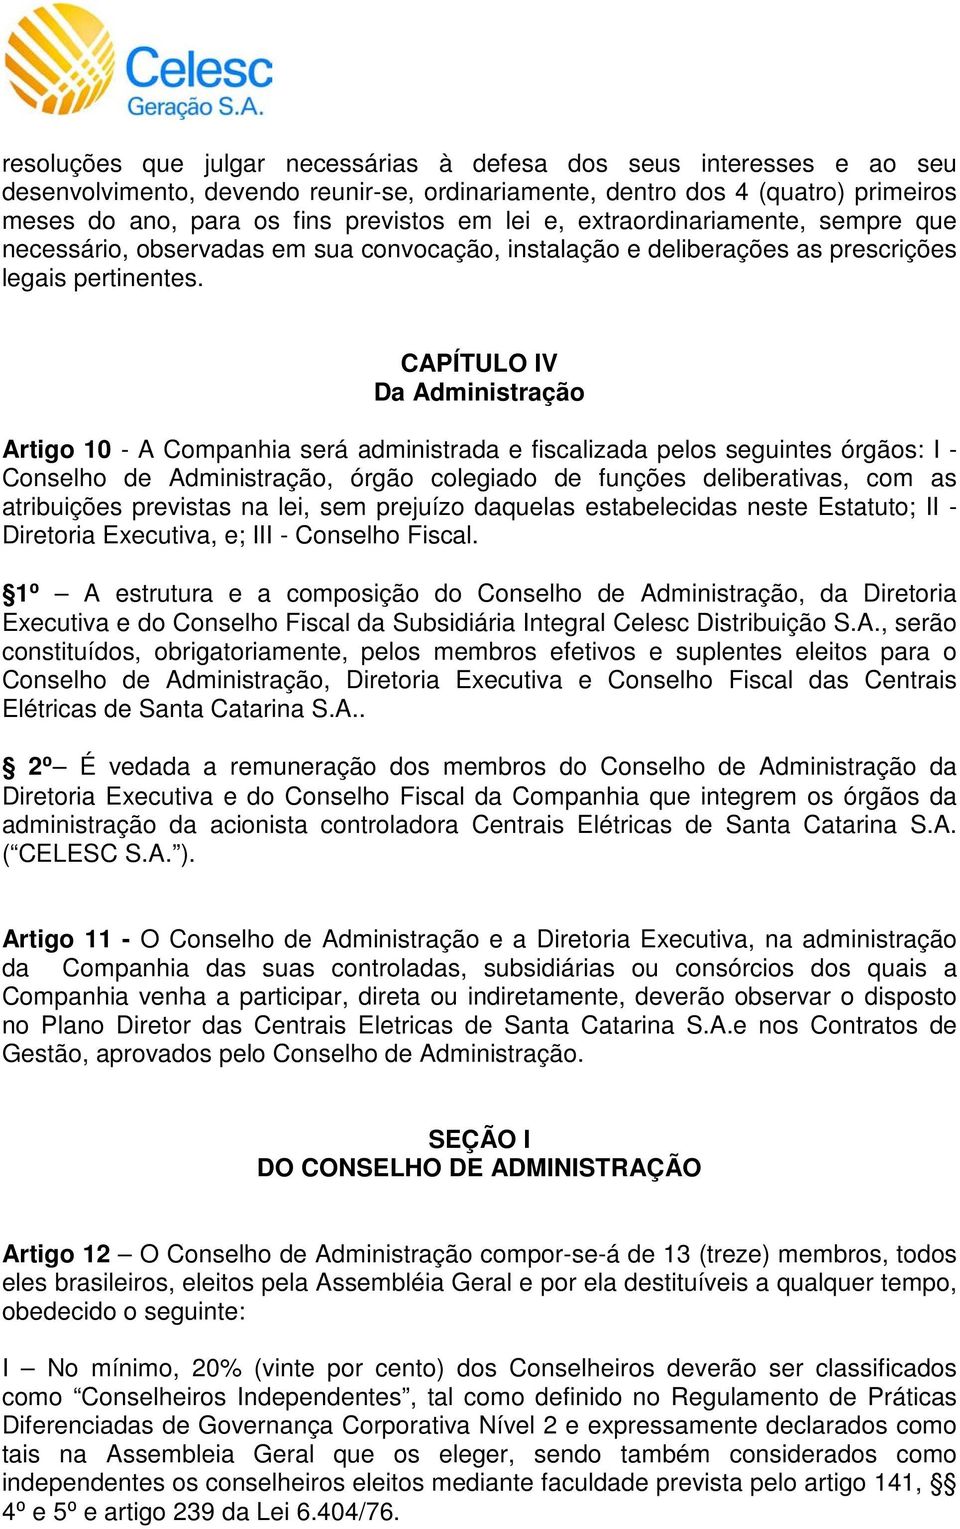 CAPÍTULO IV Da Administração Artigo 10 - A Companhia será administrada e fiscalizada pelos seguintes órgãos: I - Conselho de Administração, órgão colegiado de funções deliberativas, com as